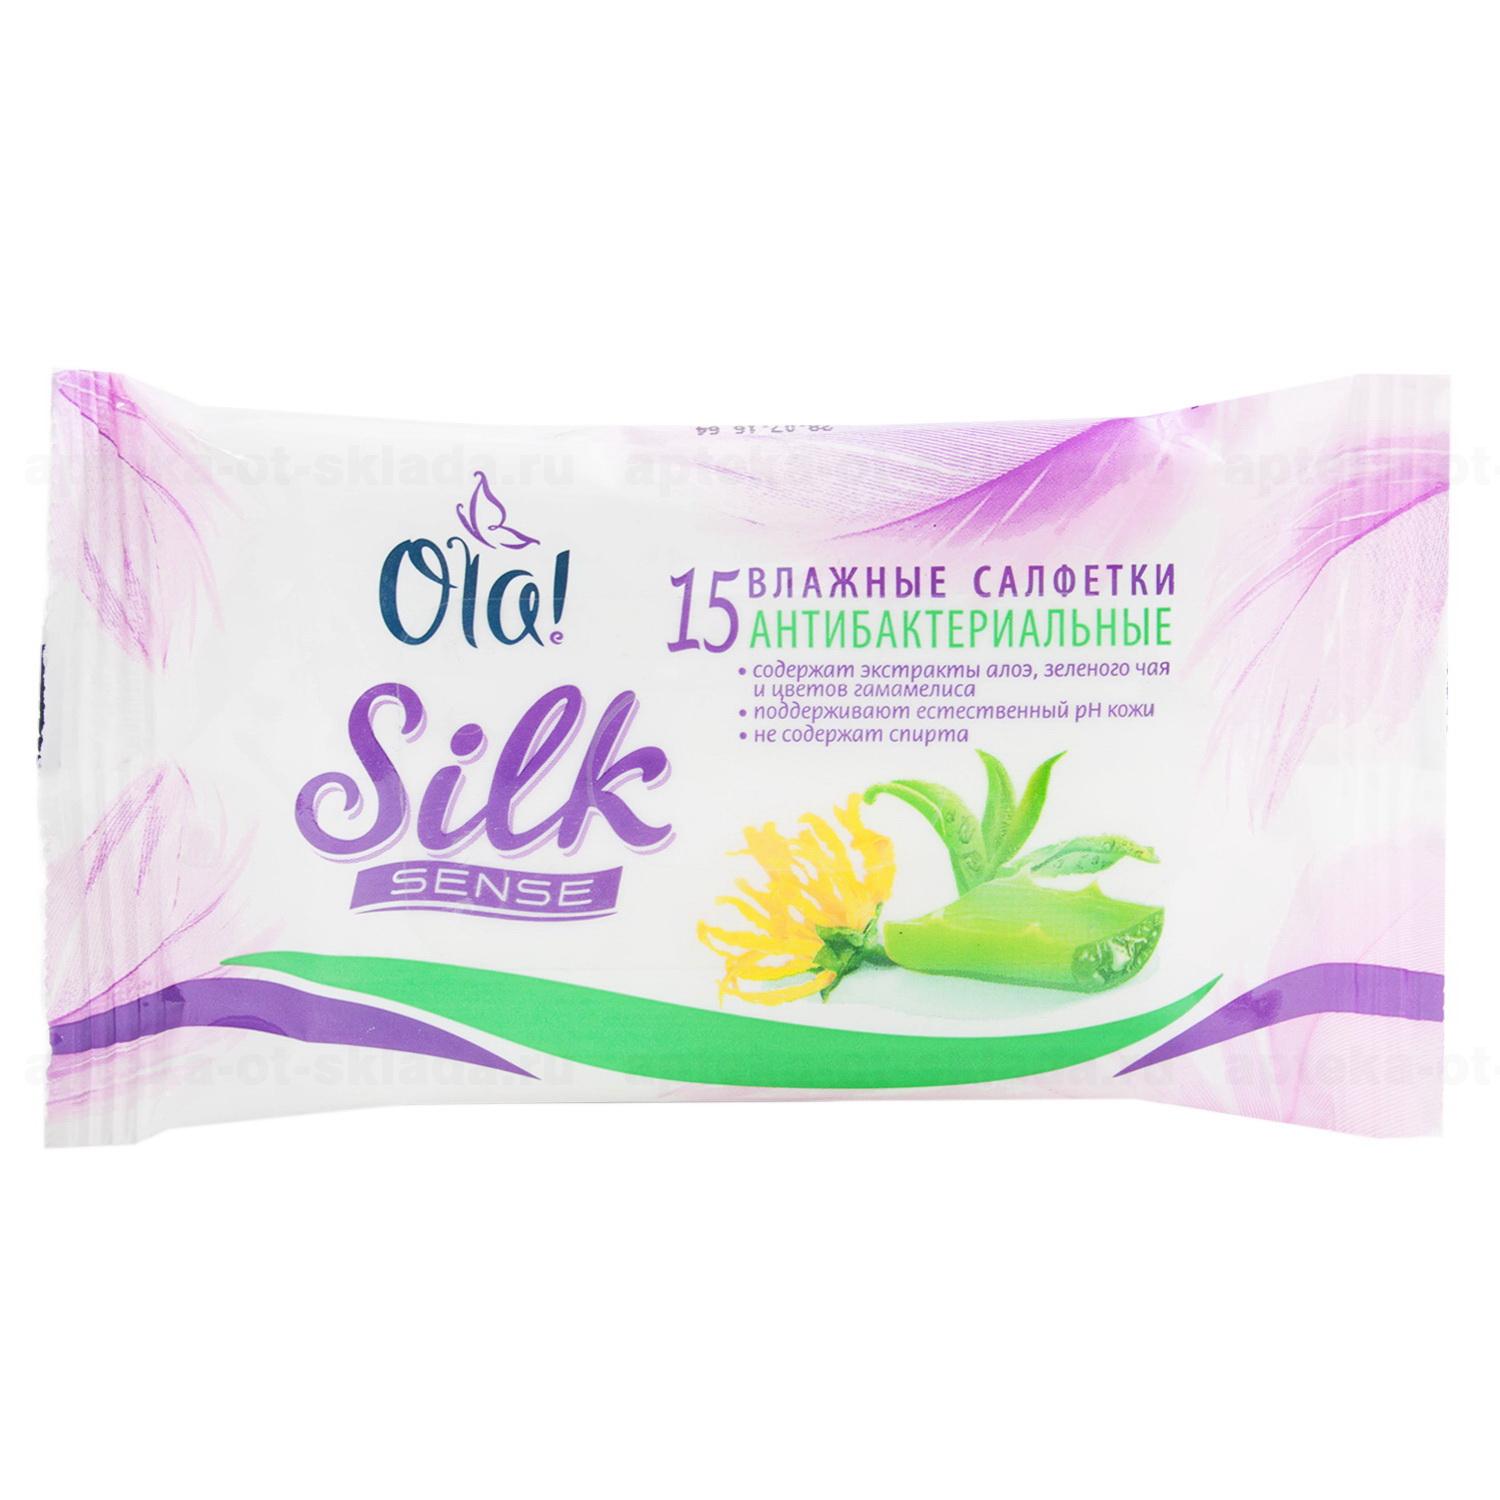 Ola silk sense салфетки влажные антибактериальные N 15